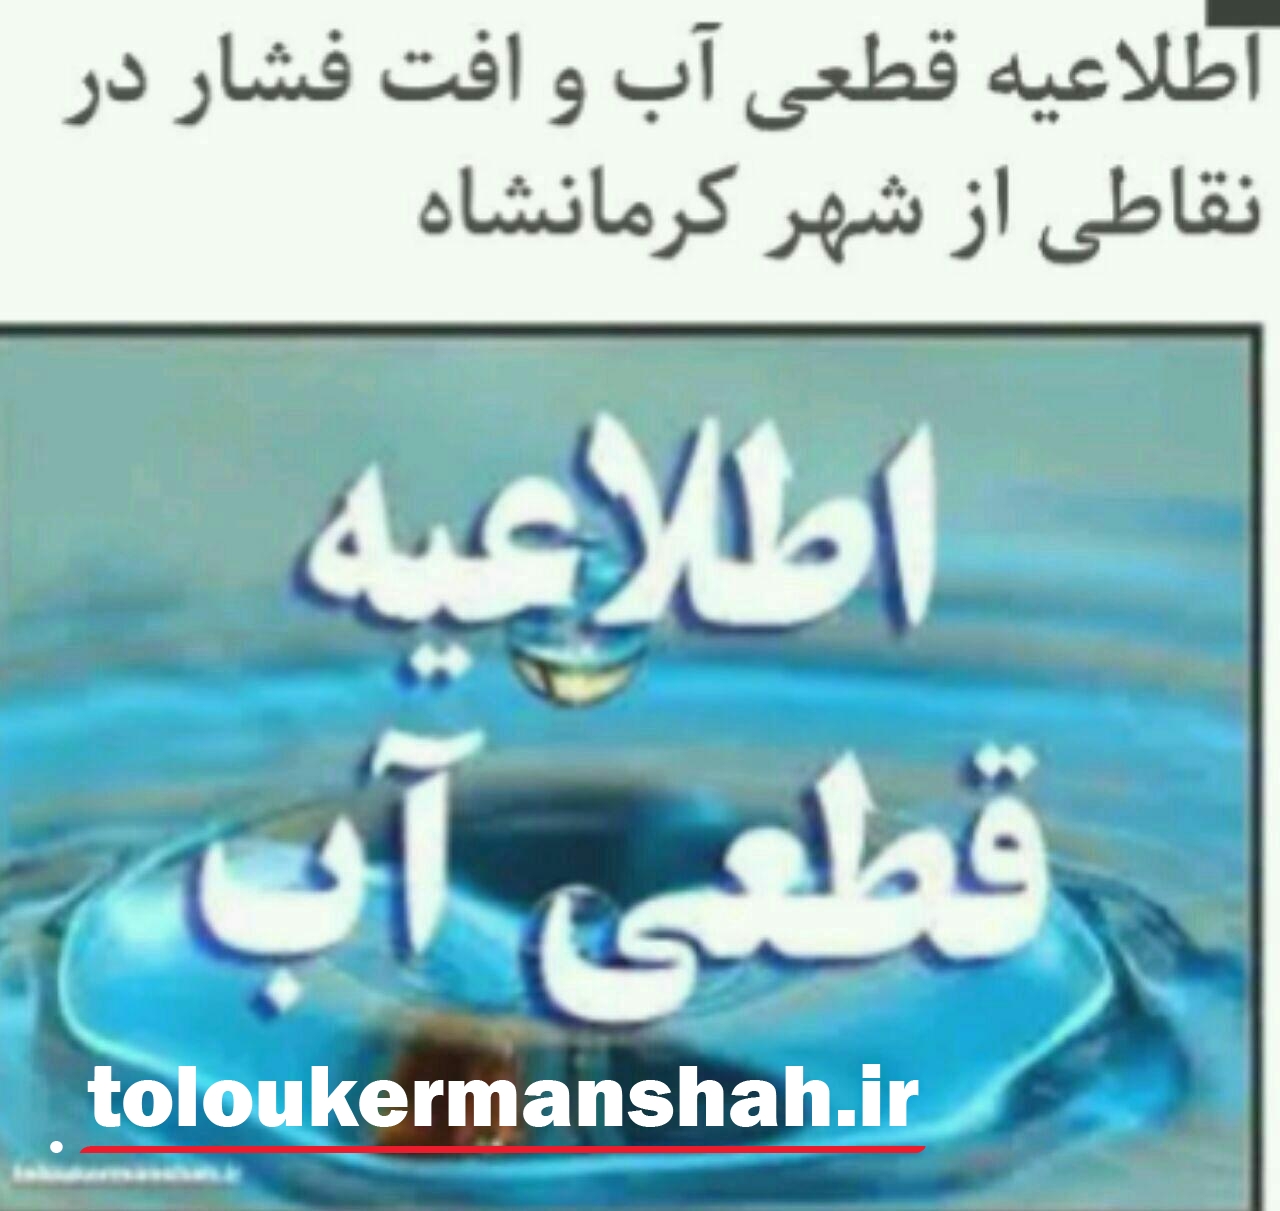 اطلاعیه قطع آب در شهر کرمانشاه